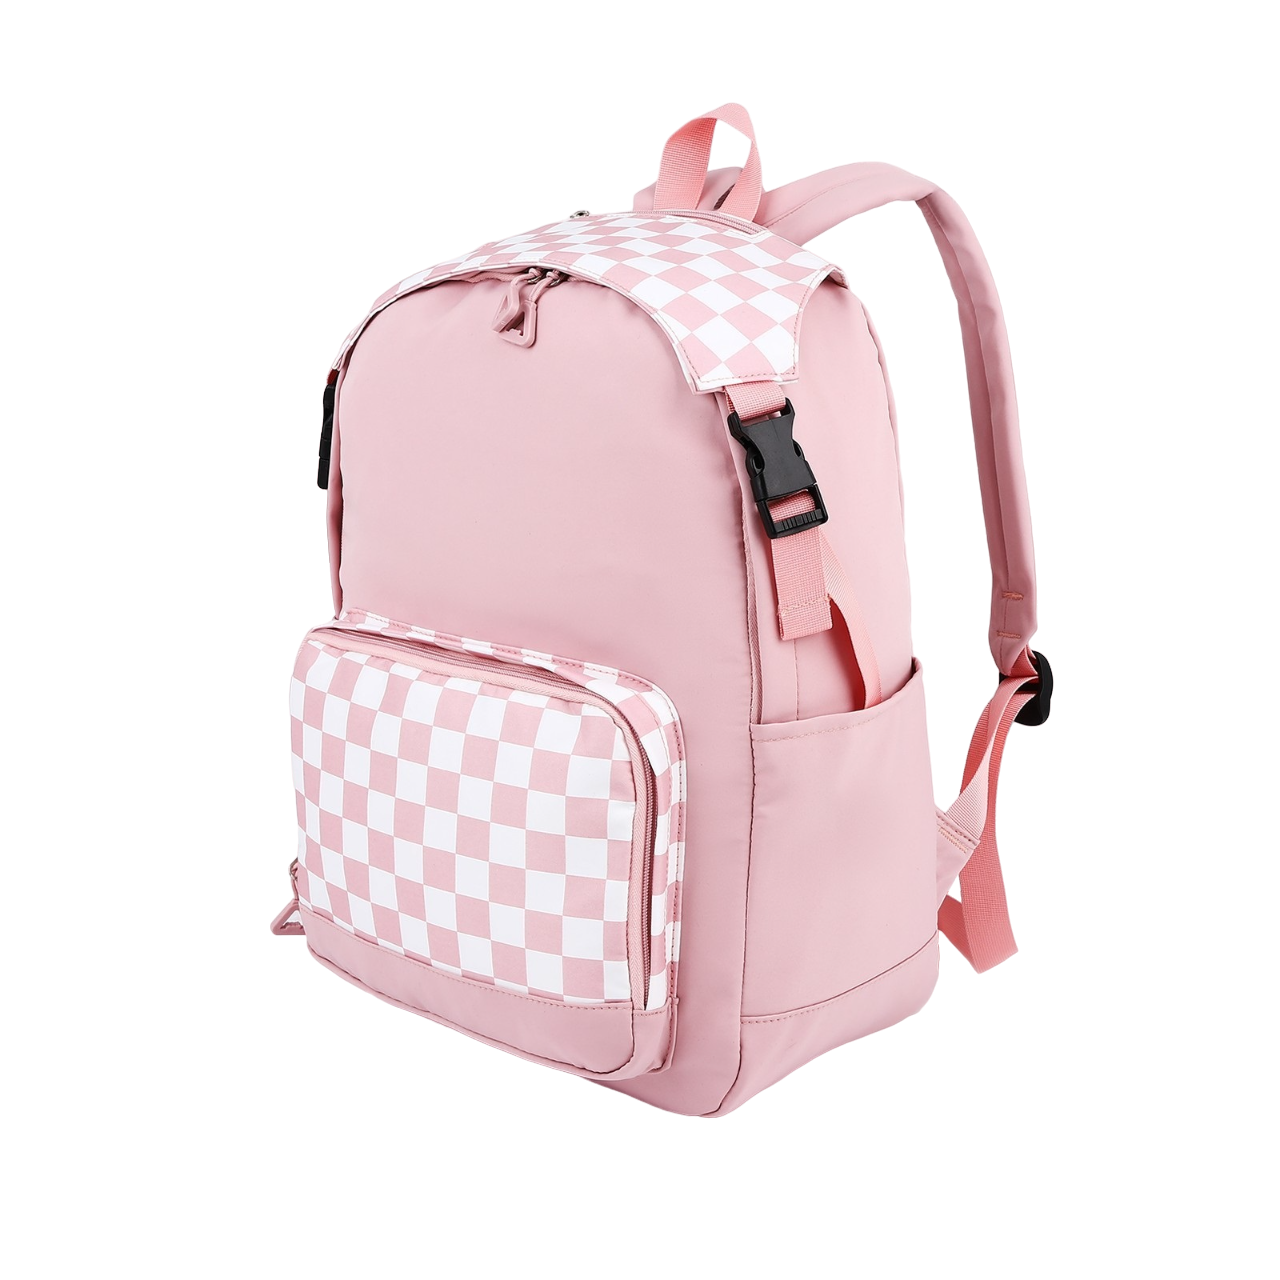 Рюкзак Клетки 29*15*40 см, 1 отд на молнии, 5 н/карманов, розовый 9681474 рюкзак школьный из текстиля 5 карманов розовый